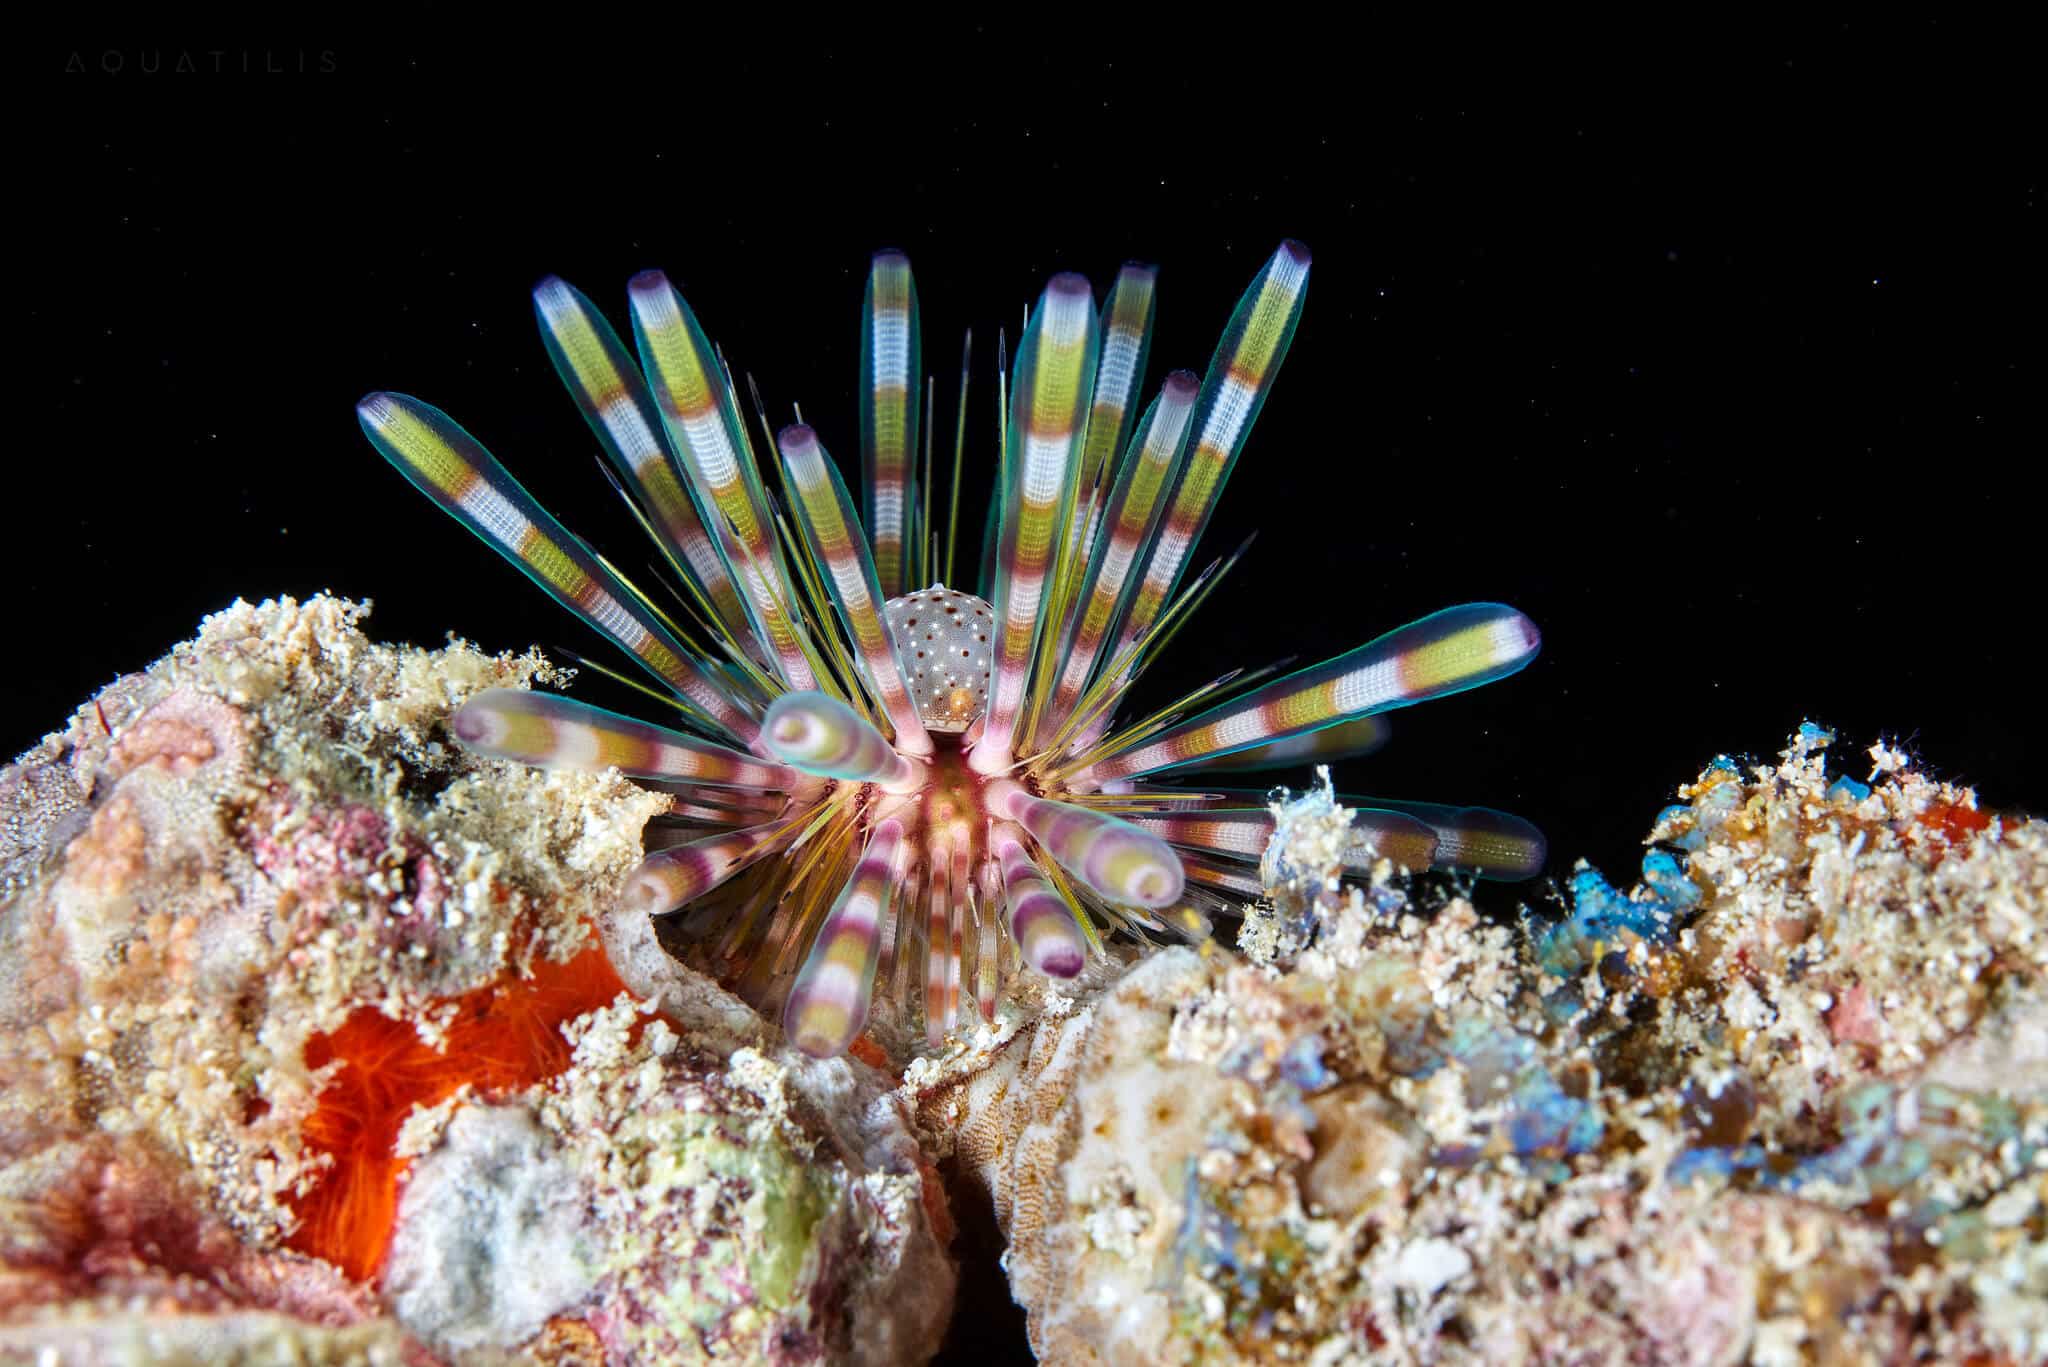 снимки удивительных существ из глубин мирового океана, фото 15